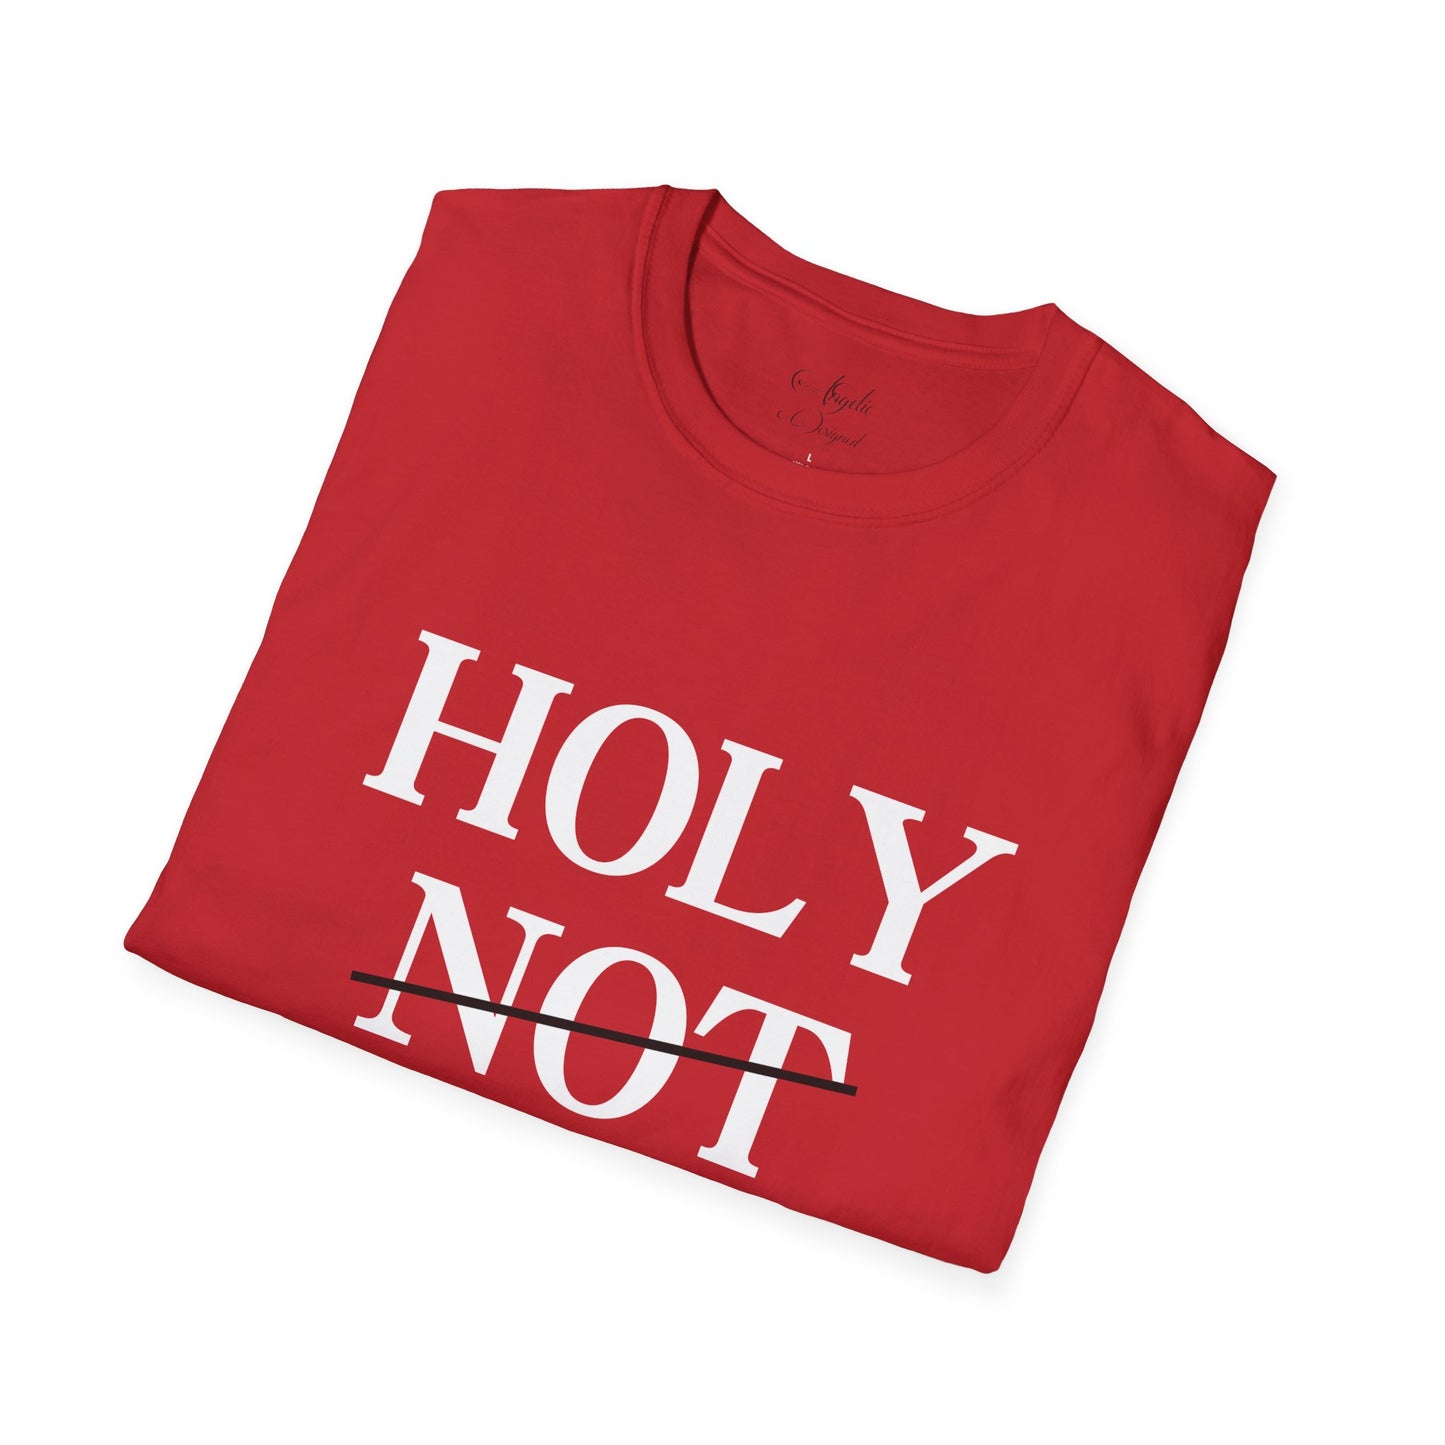 Holy Not Hood Unisex Softstyle T-Shirt